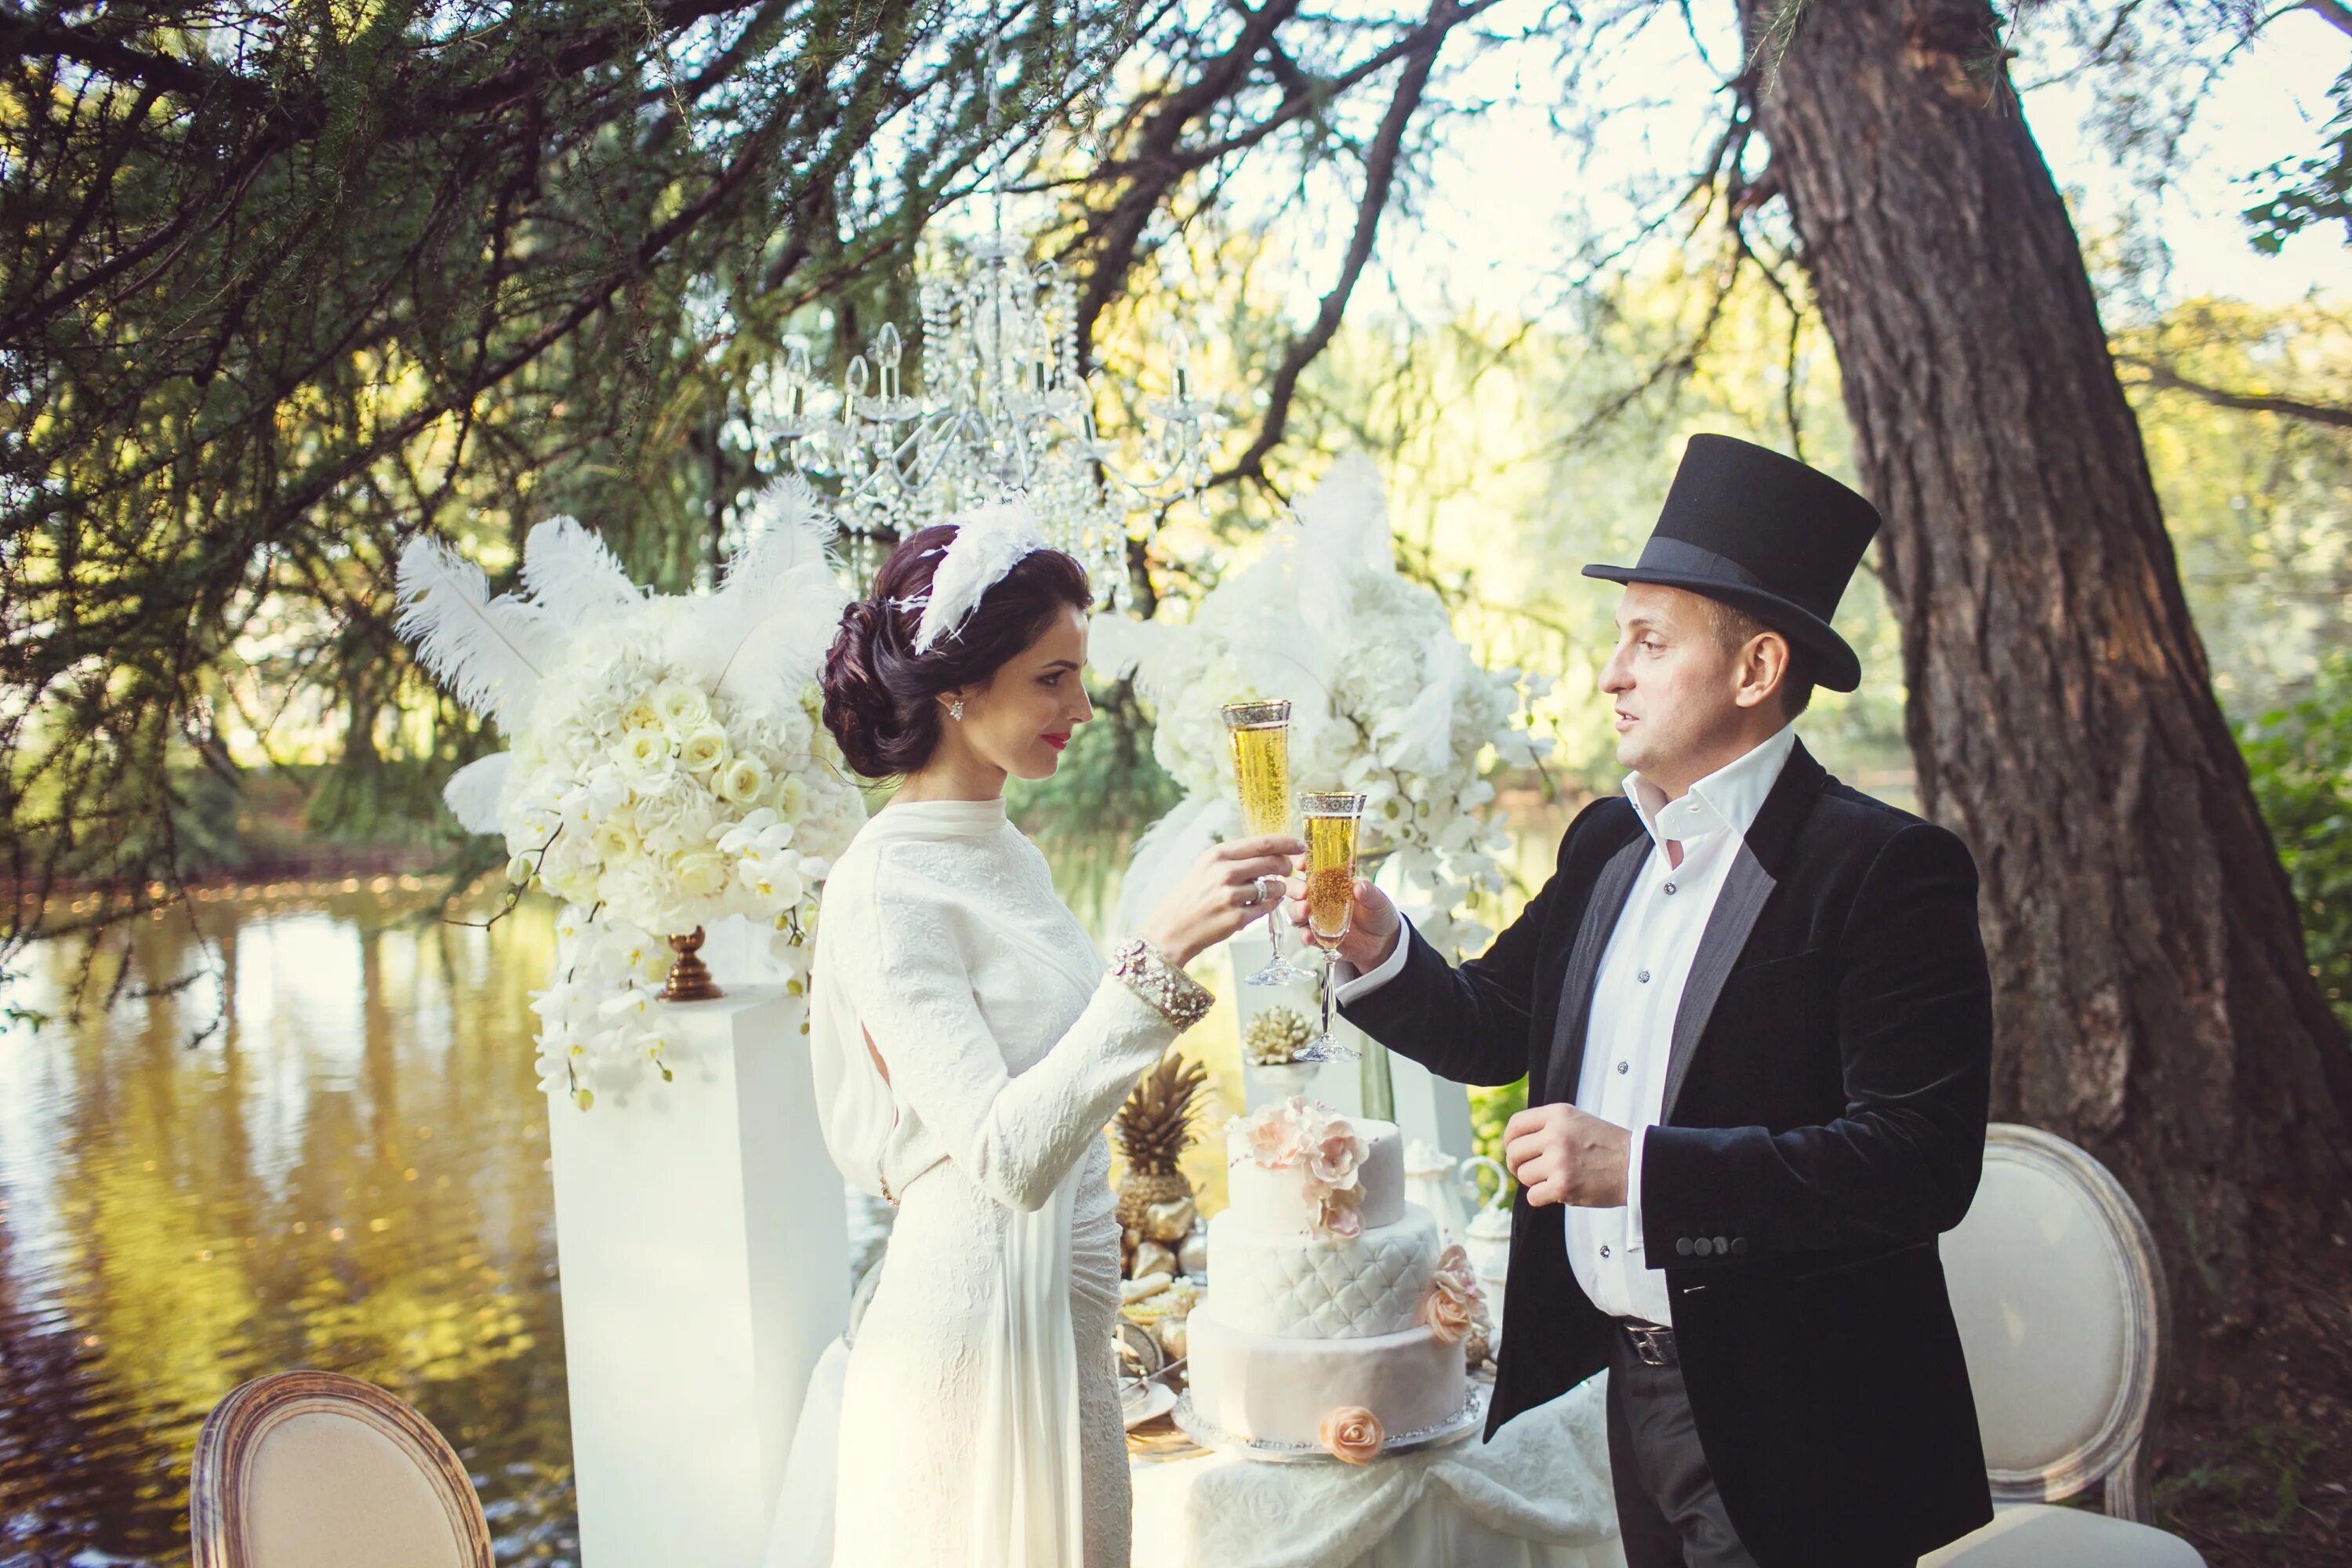 В подходящий под ваш. Свадьба в стиле Лебединое озеро. Свадьба в стиле 007. Свадьба в стиле нулевых. Свадьба в стиле 18 века в парке.